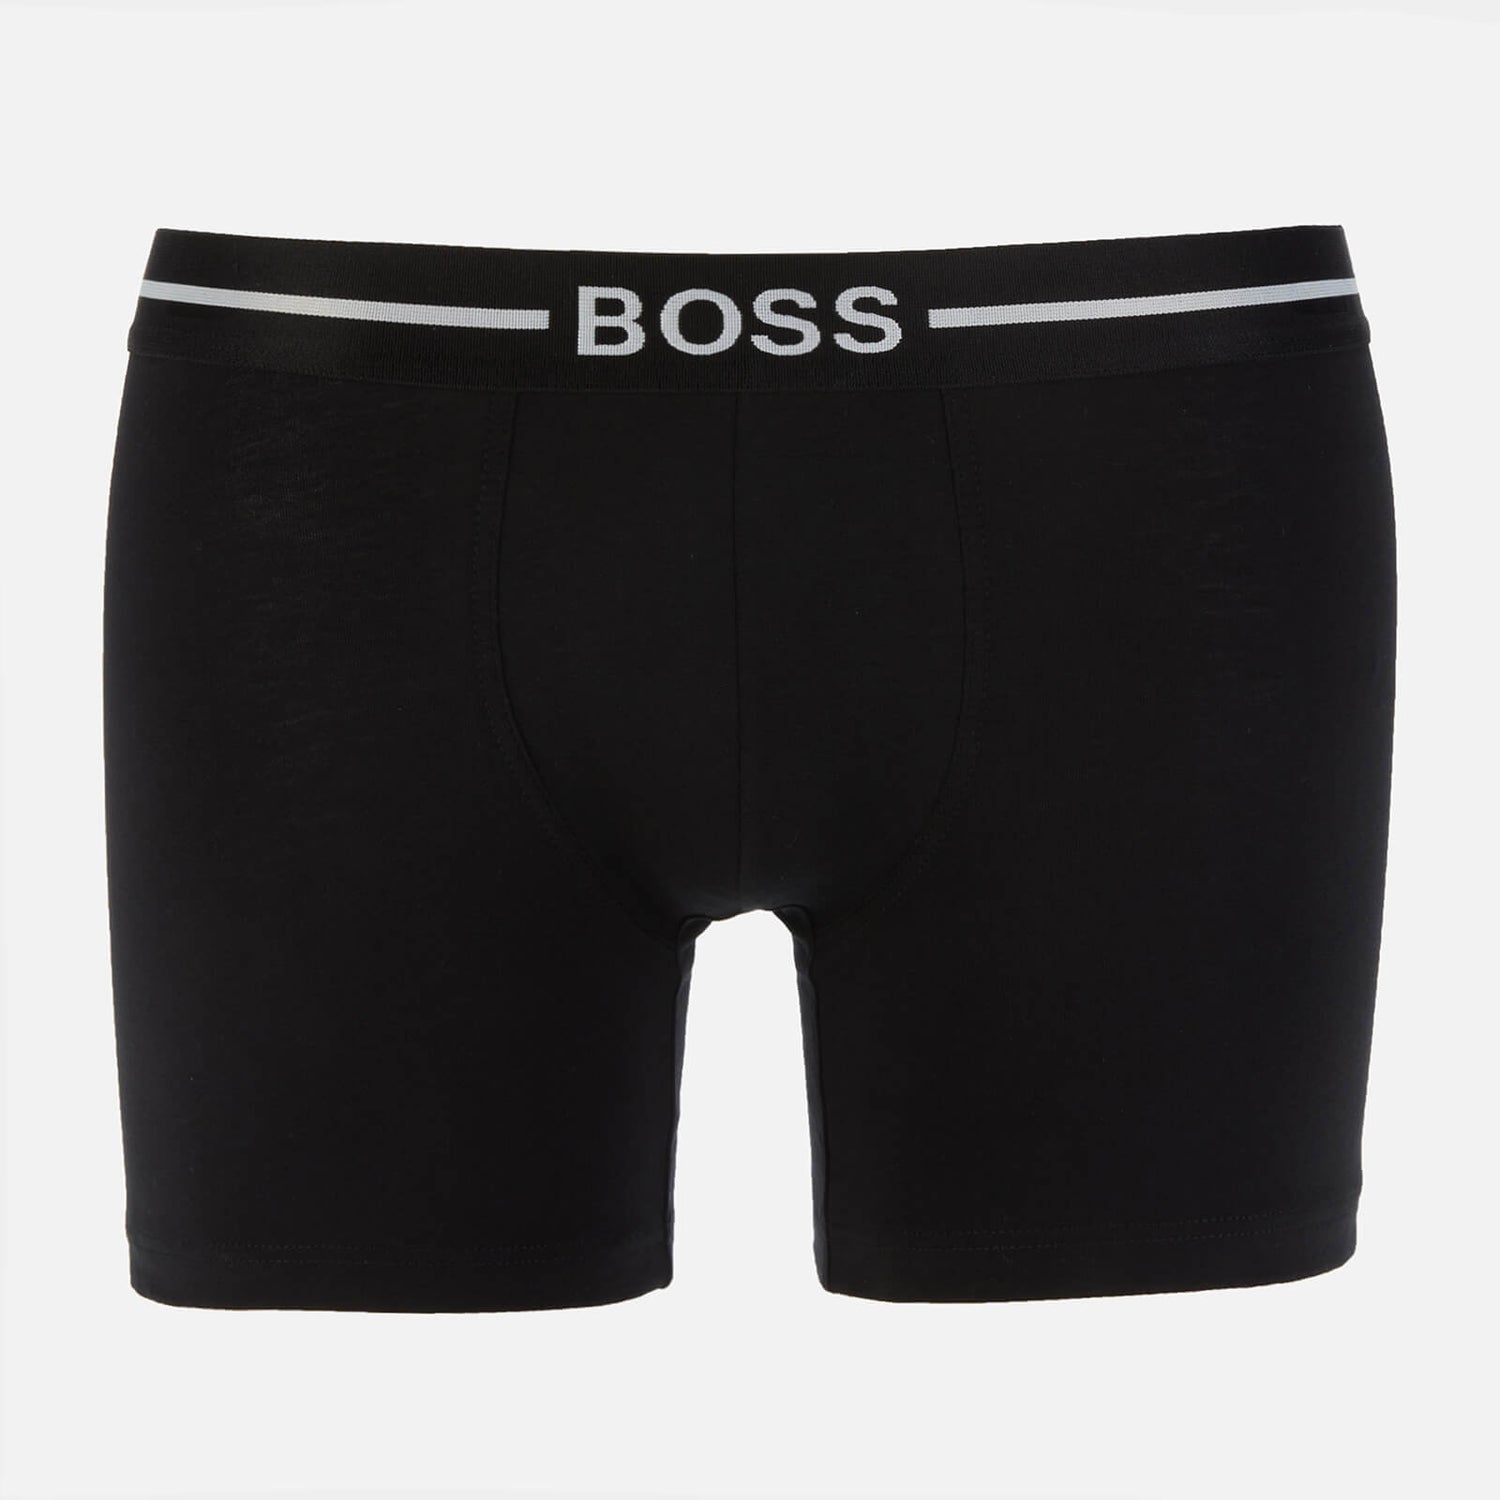 BOSS Bodywear Men's 3-Pack Boxer Briefs - Black/Navy/Khaki